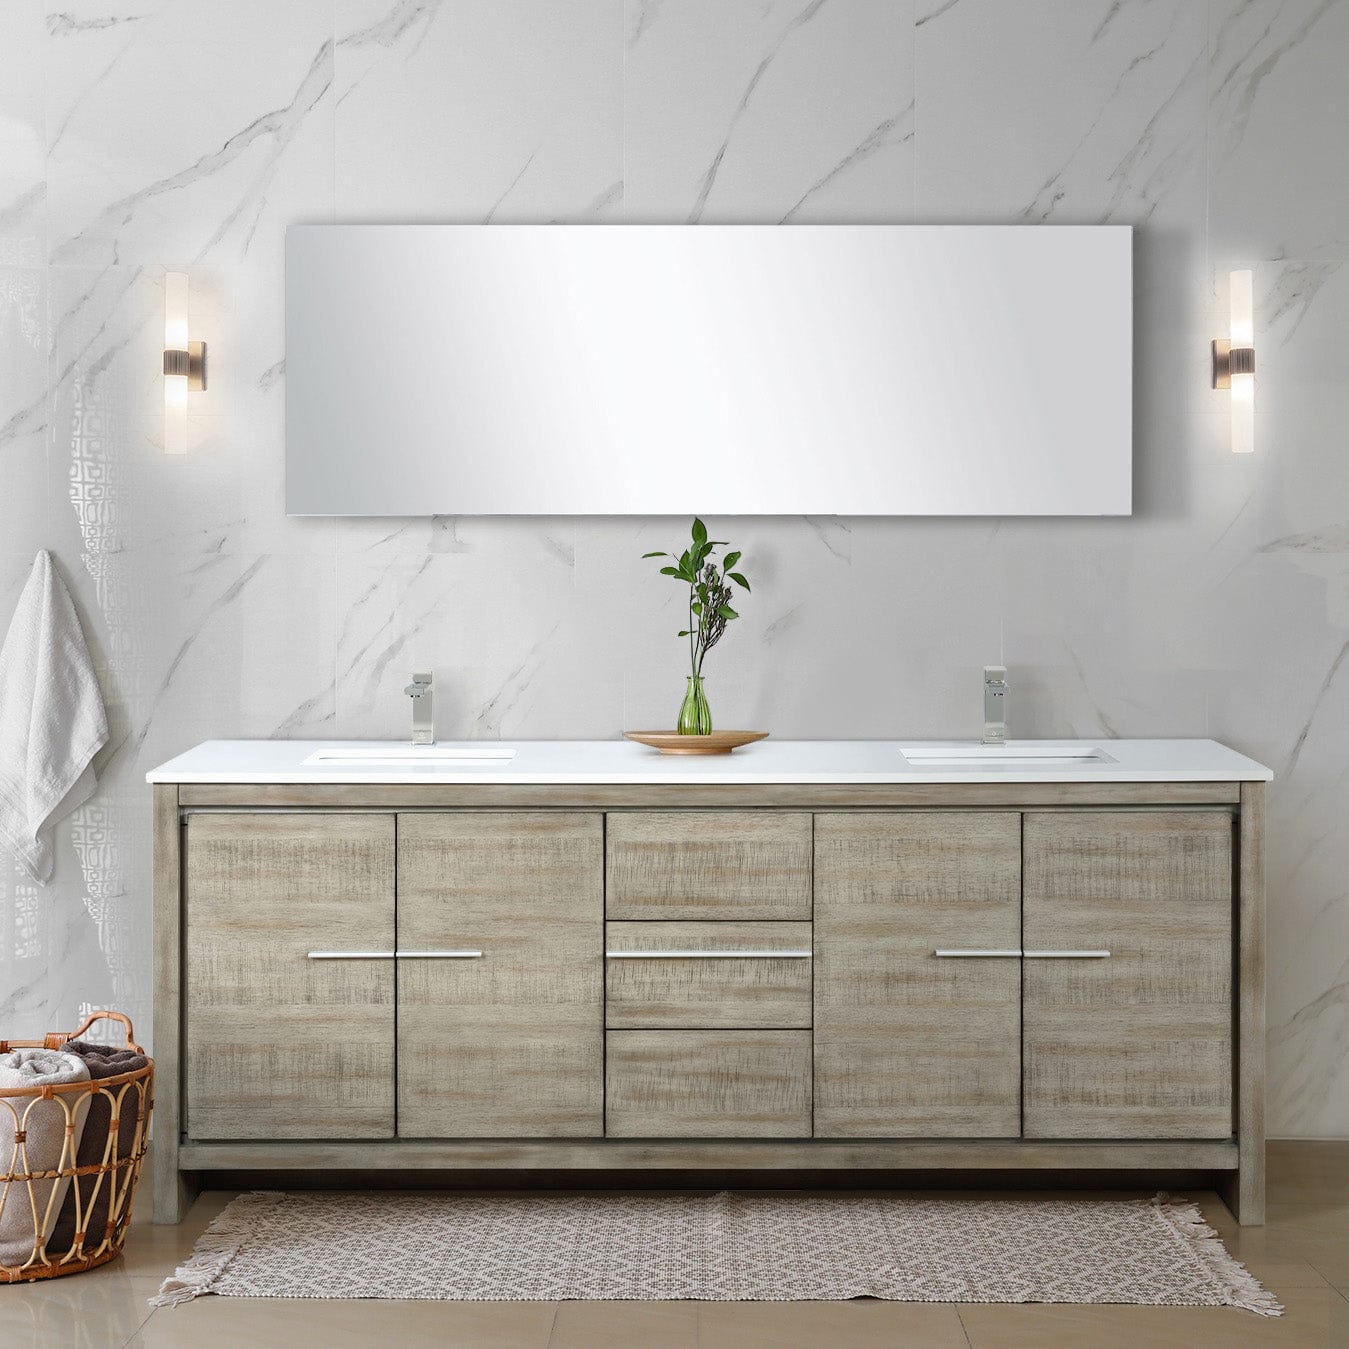 Lexora Bathroom Vanity Cultured Marble / No Faucet / No Mirror Lafarre 80" Rustic Acacia Double Bathroom Vanity